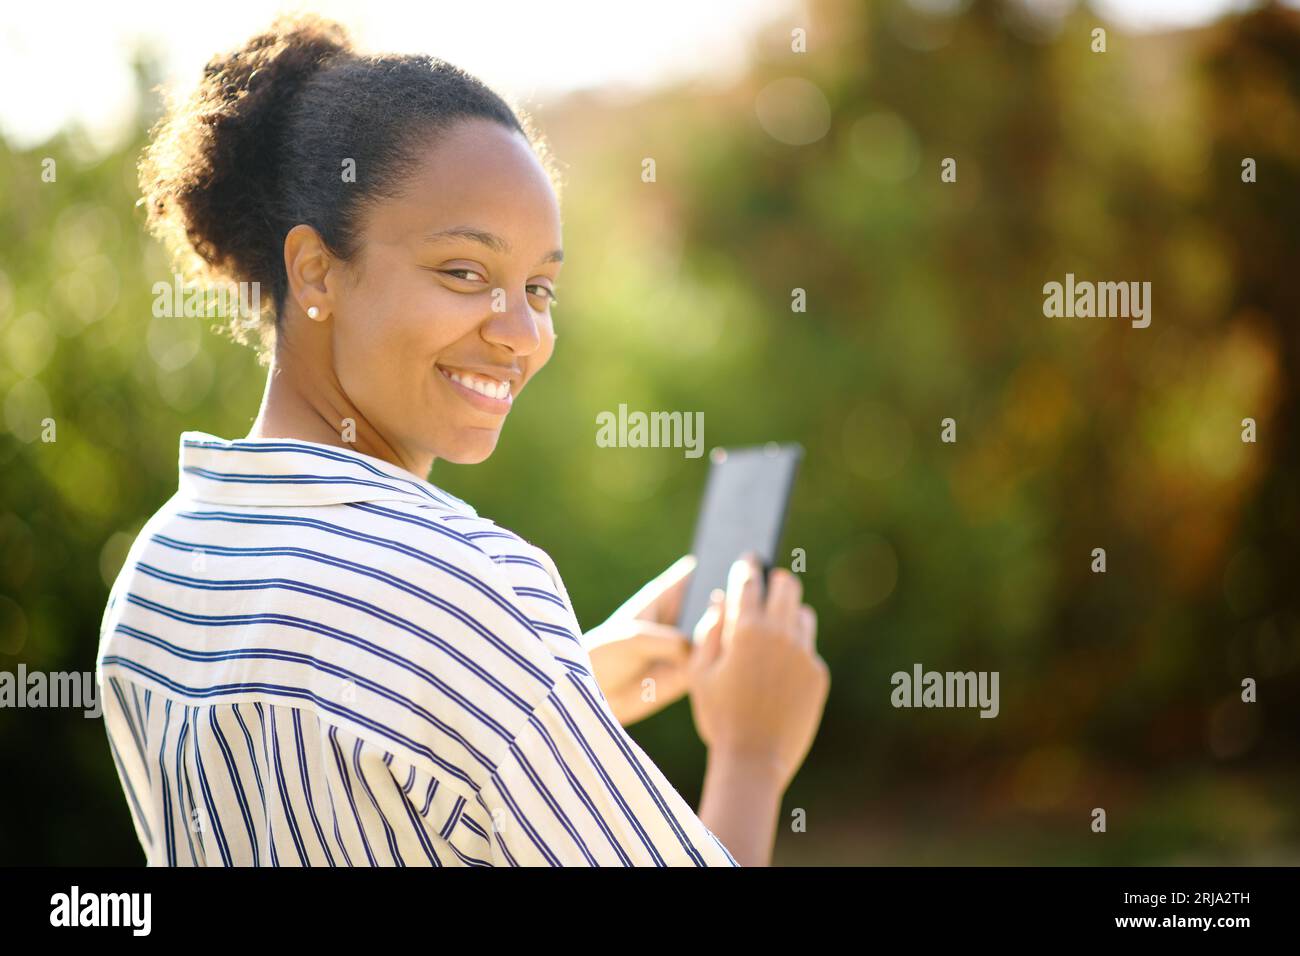 Glückliche schwarze Frau sieht dich an, wenn du dein Handy in einem Park hältst Stockfoto